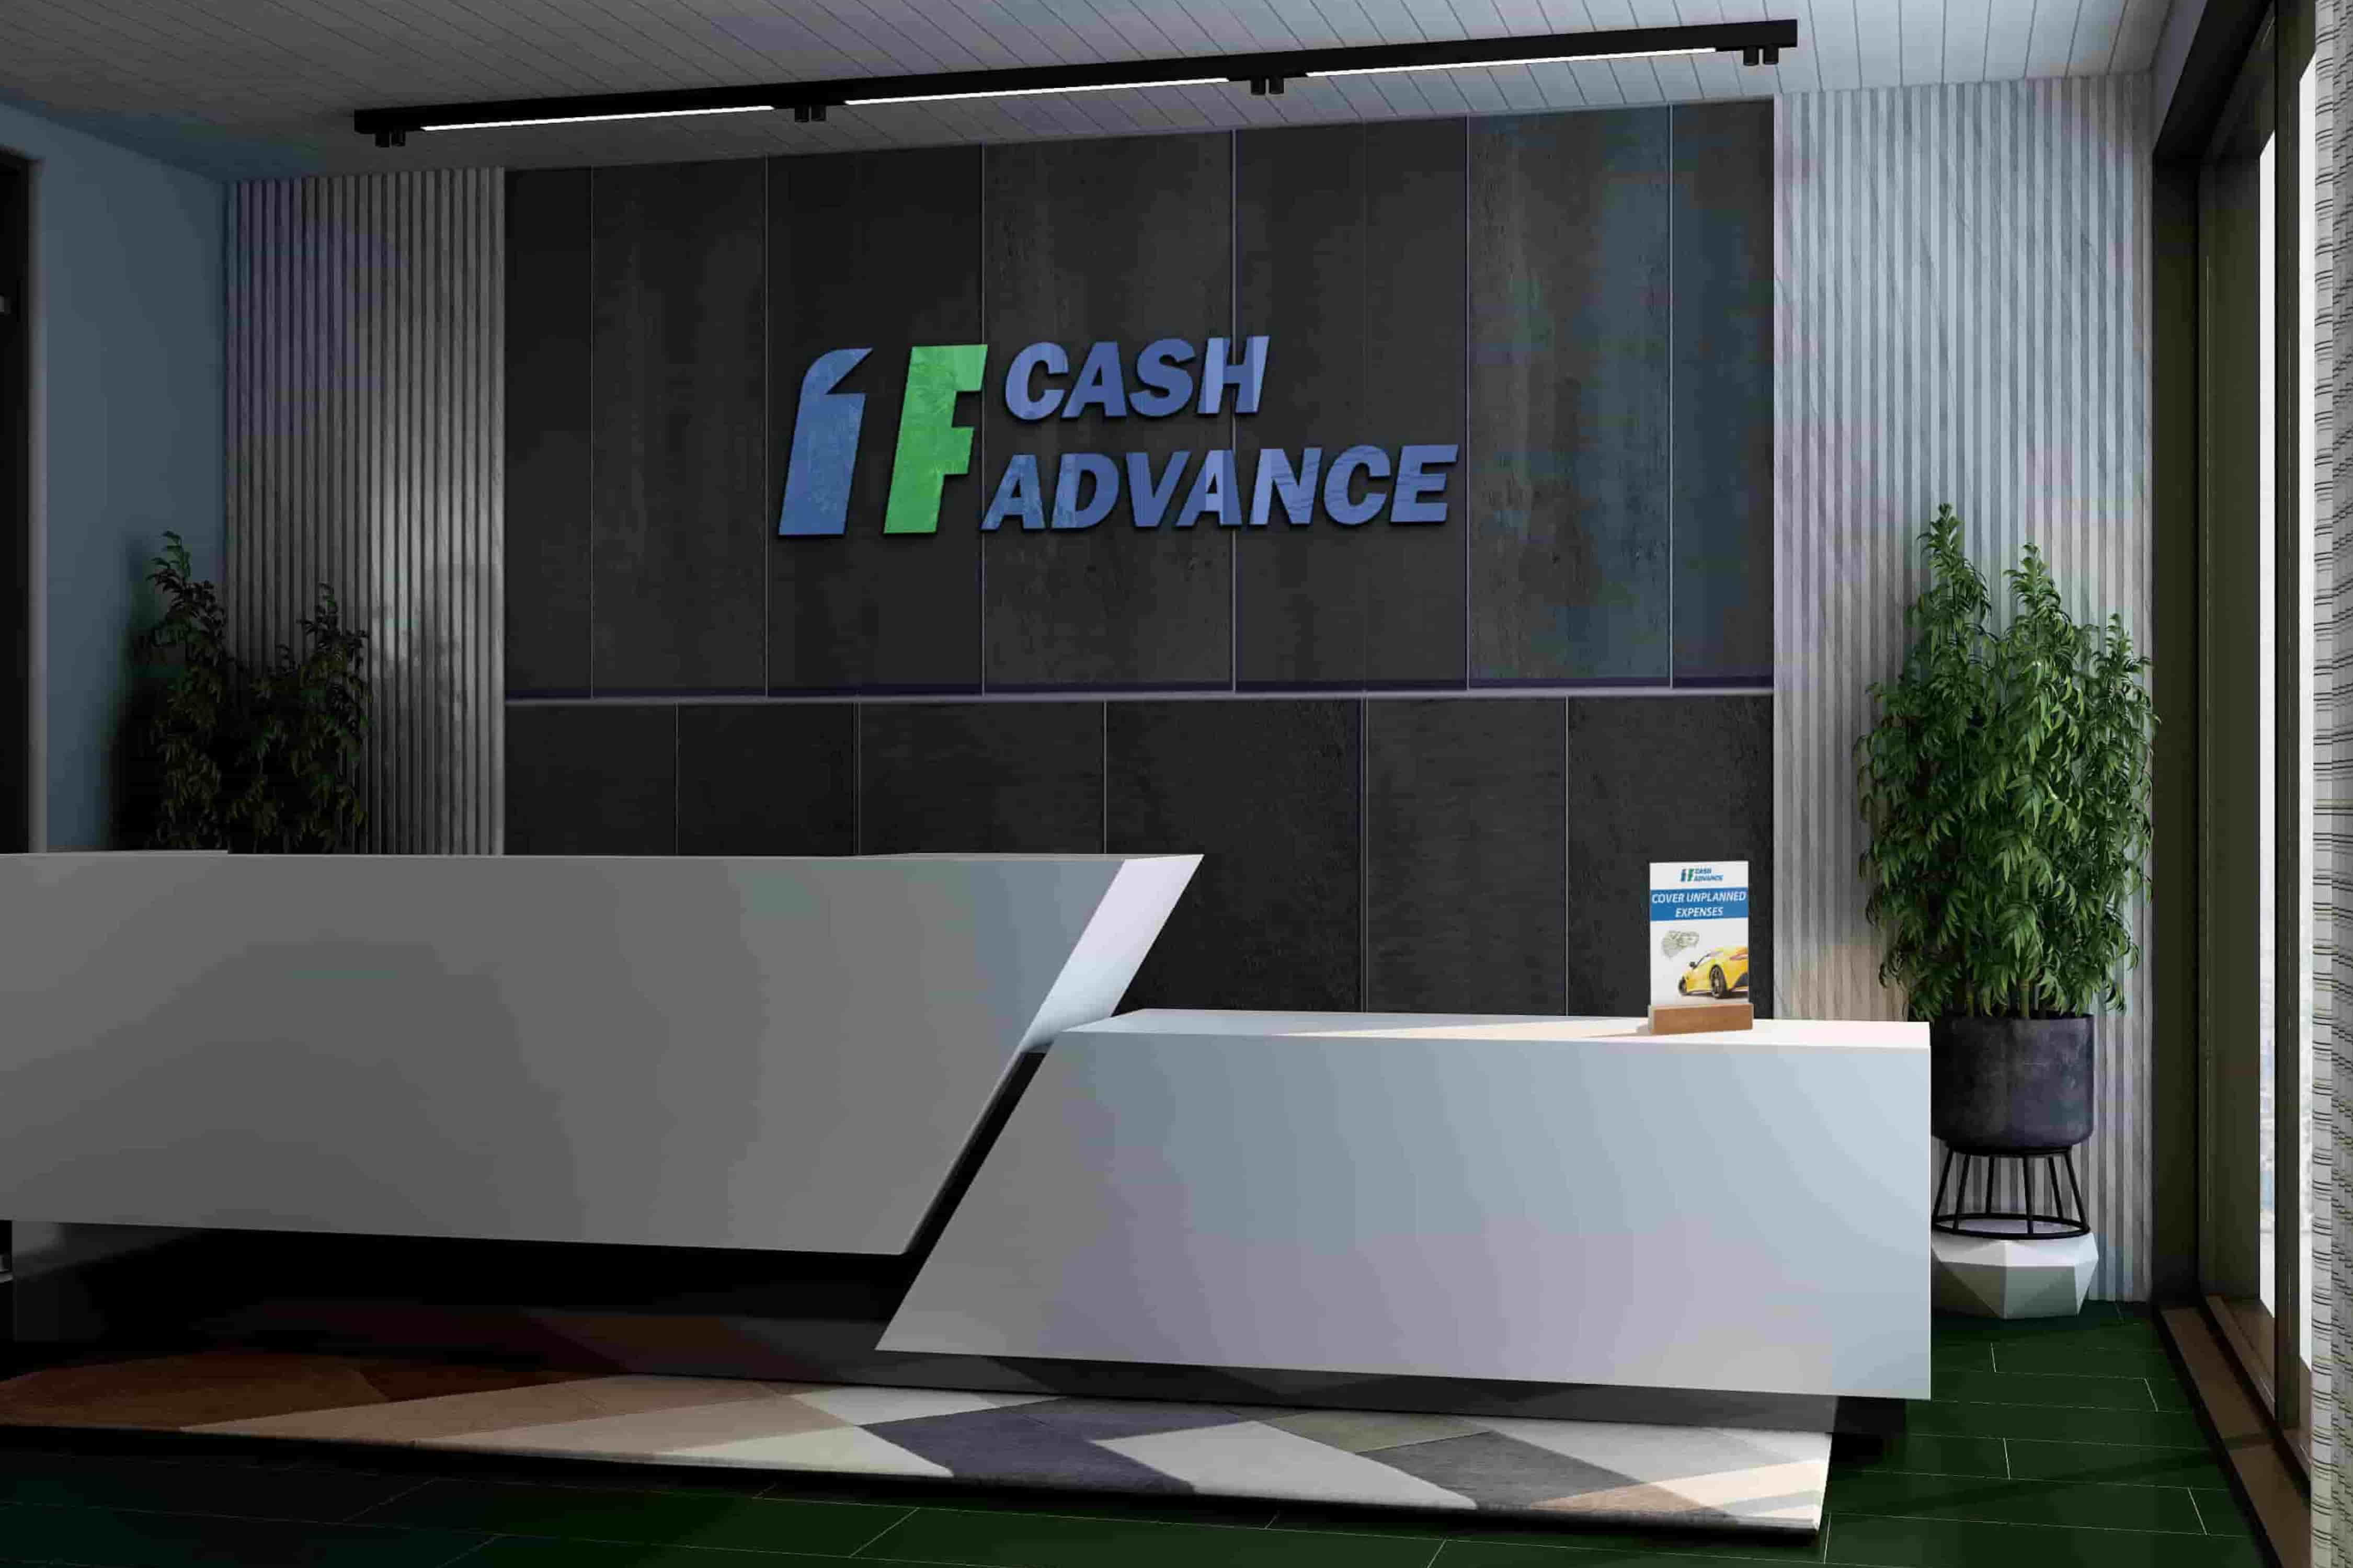 Cash advance AK